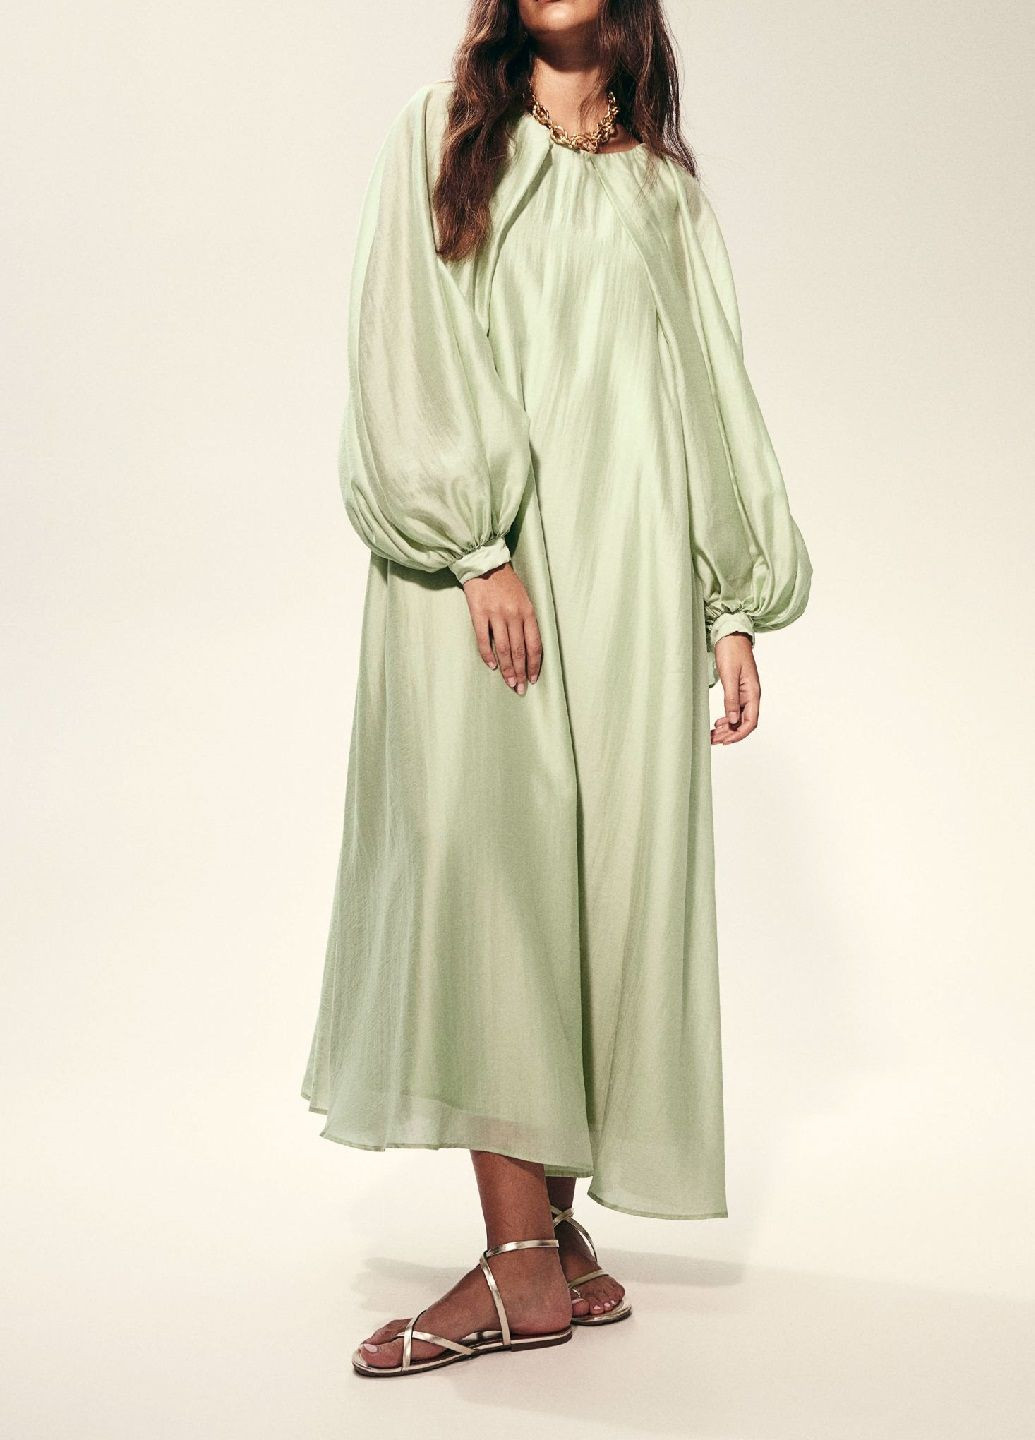 Светло-зеленое праздничный платье H&M однотонное